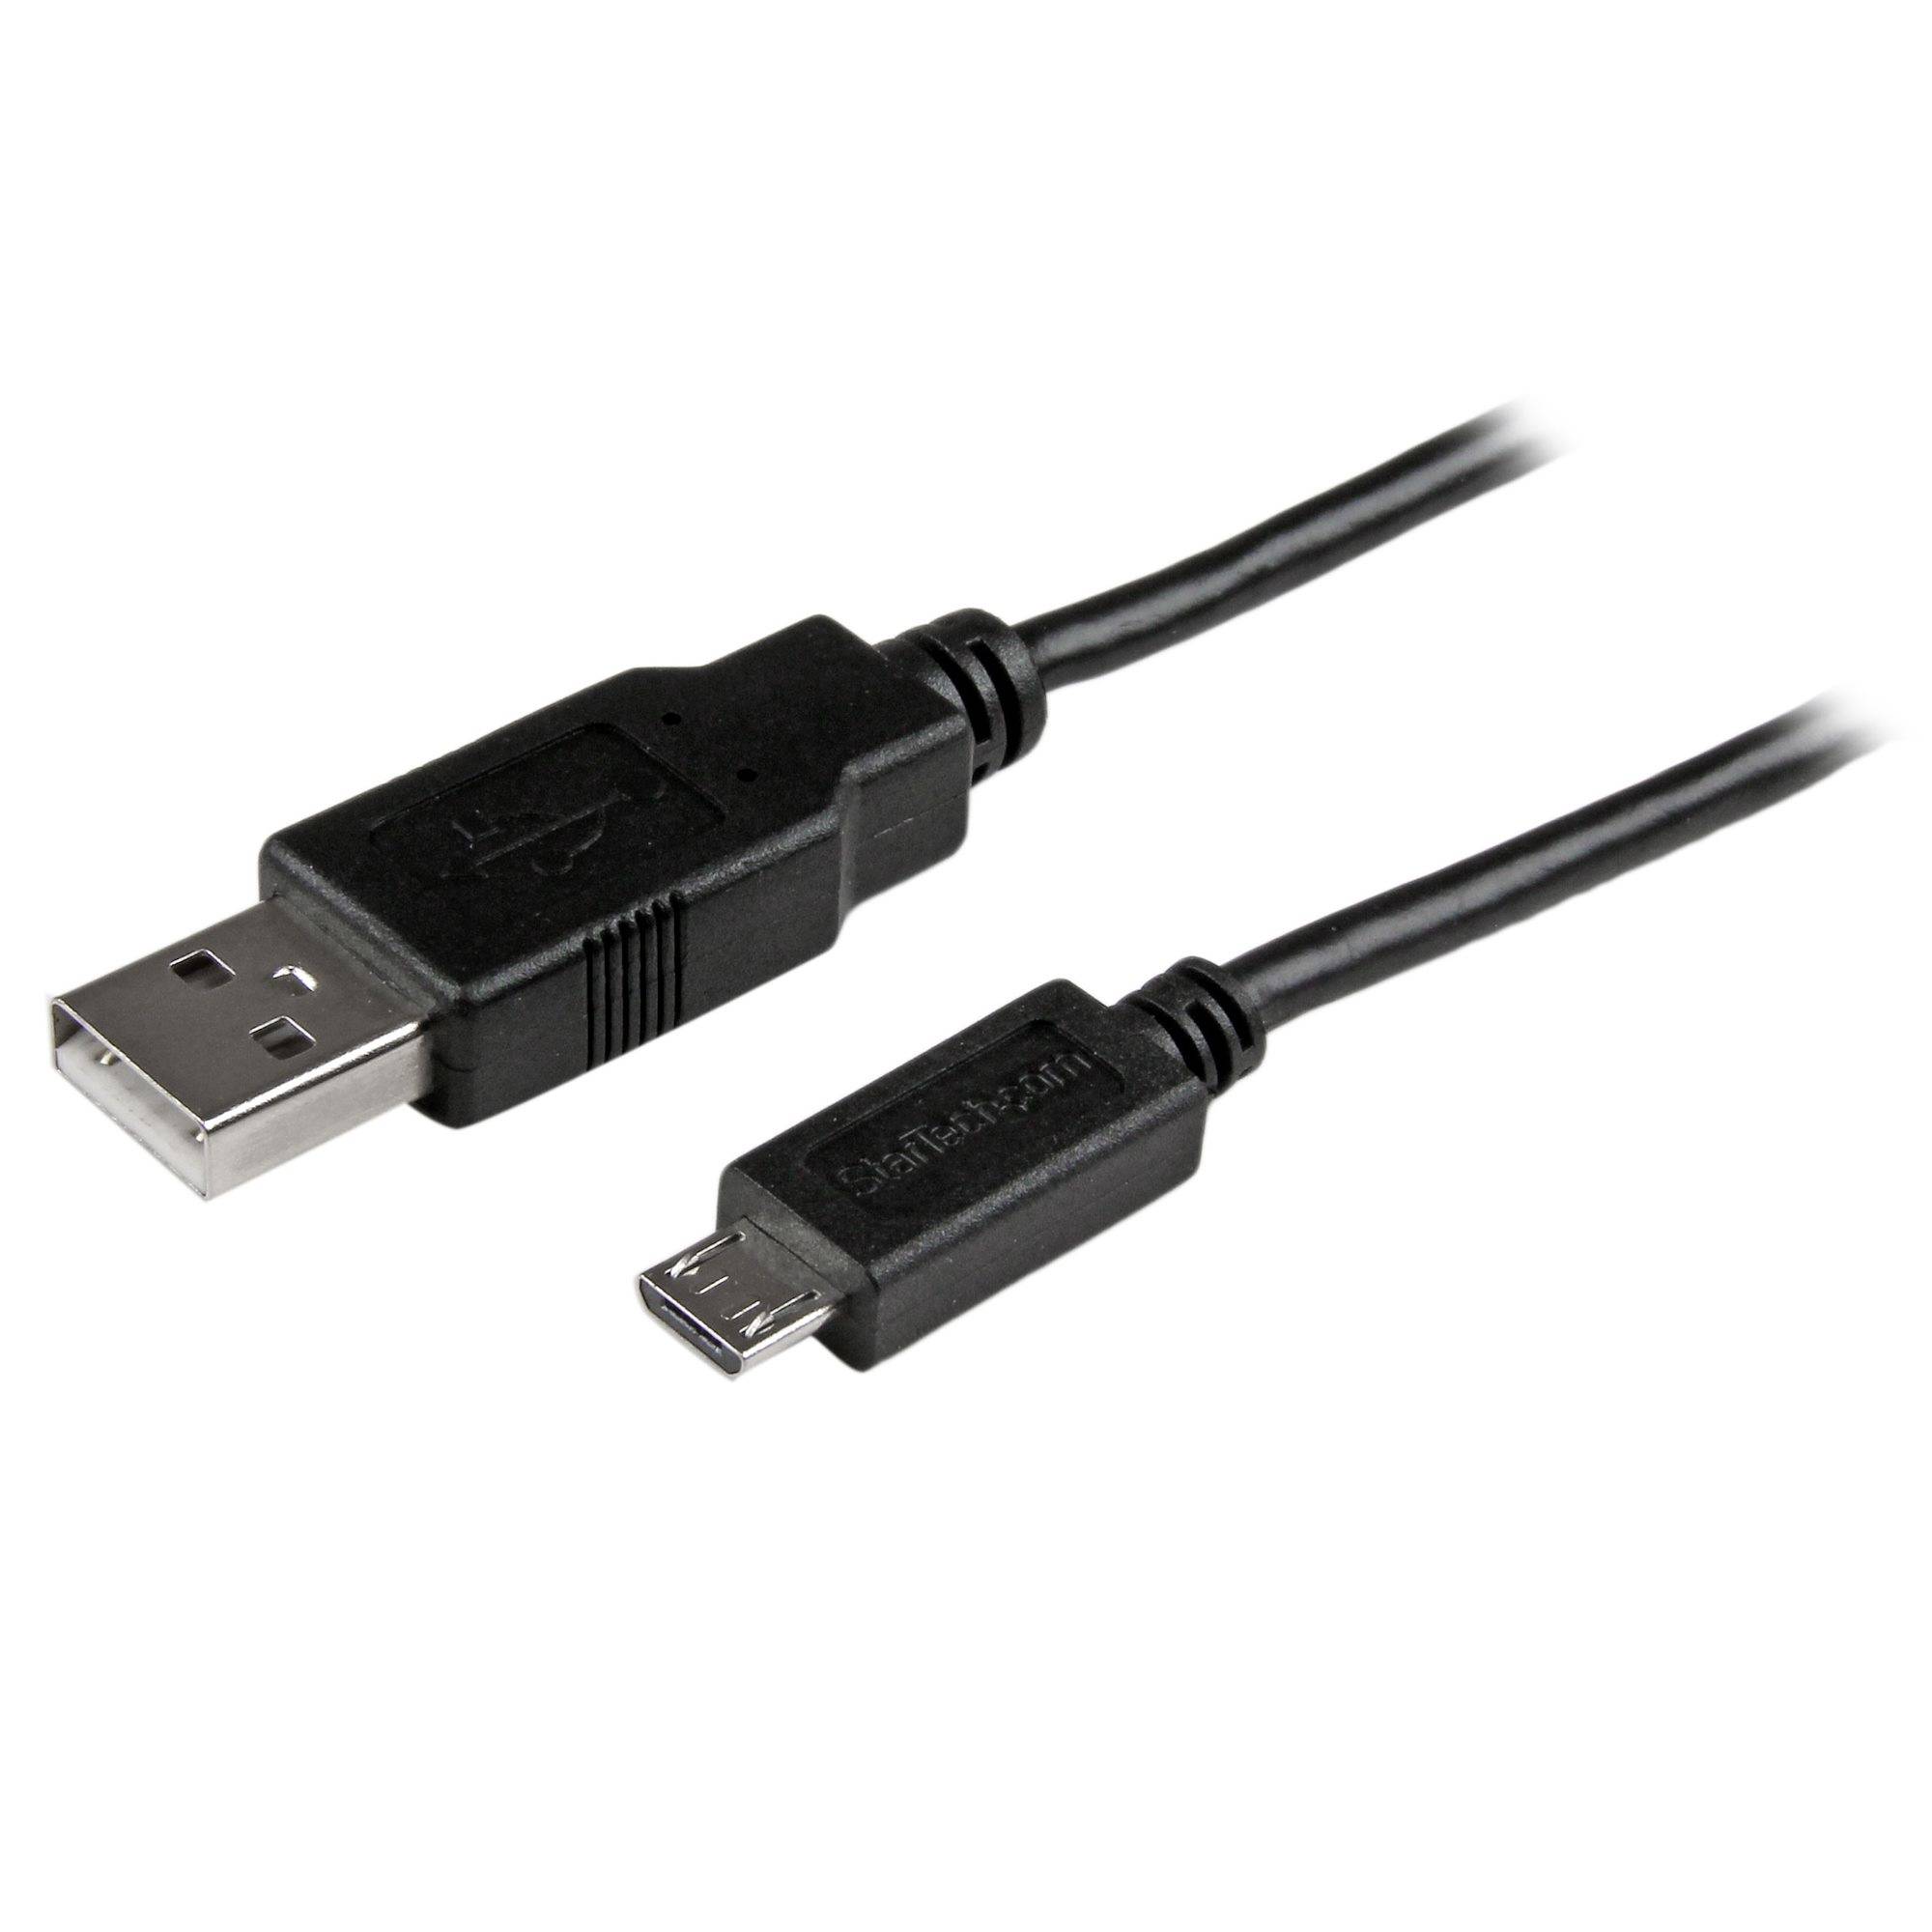 Rca Informatique - Image du produit : CABLE CHARGE / SYNCHRONISATION USB A VERS MICRO B MINCE 2M NOIR